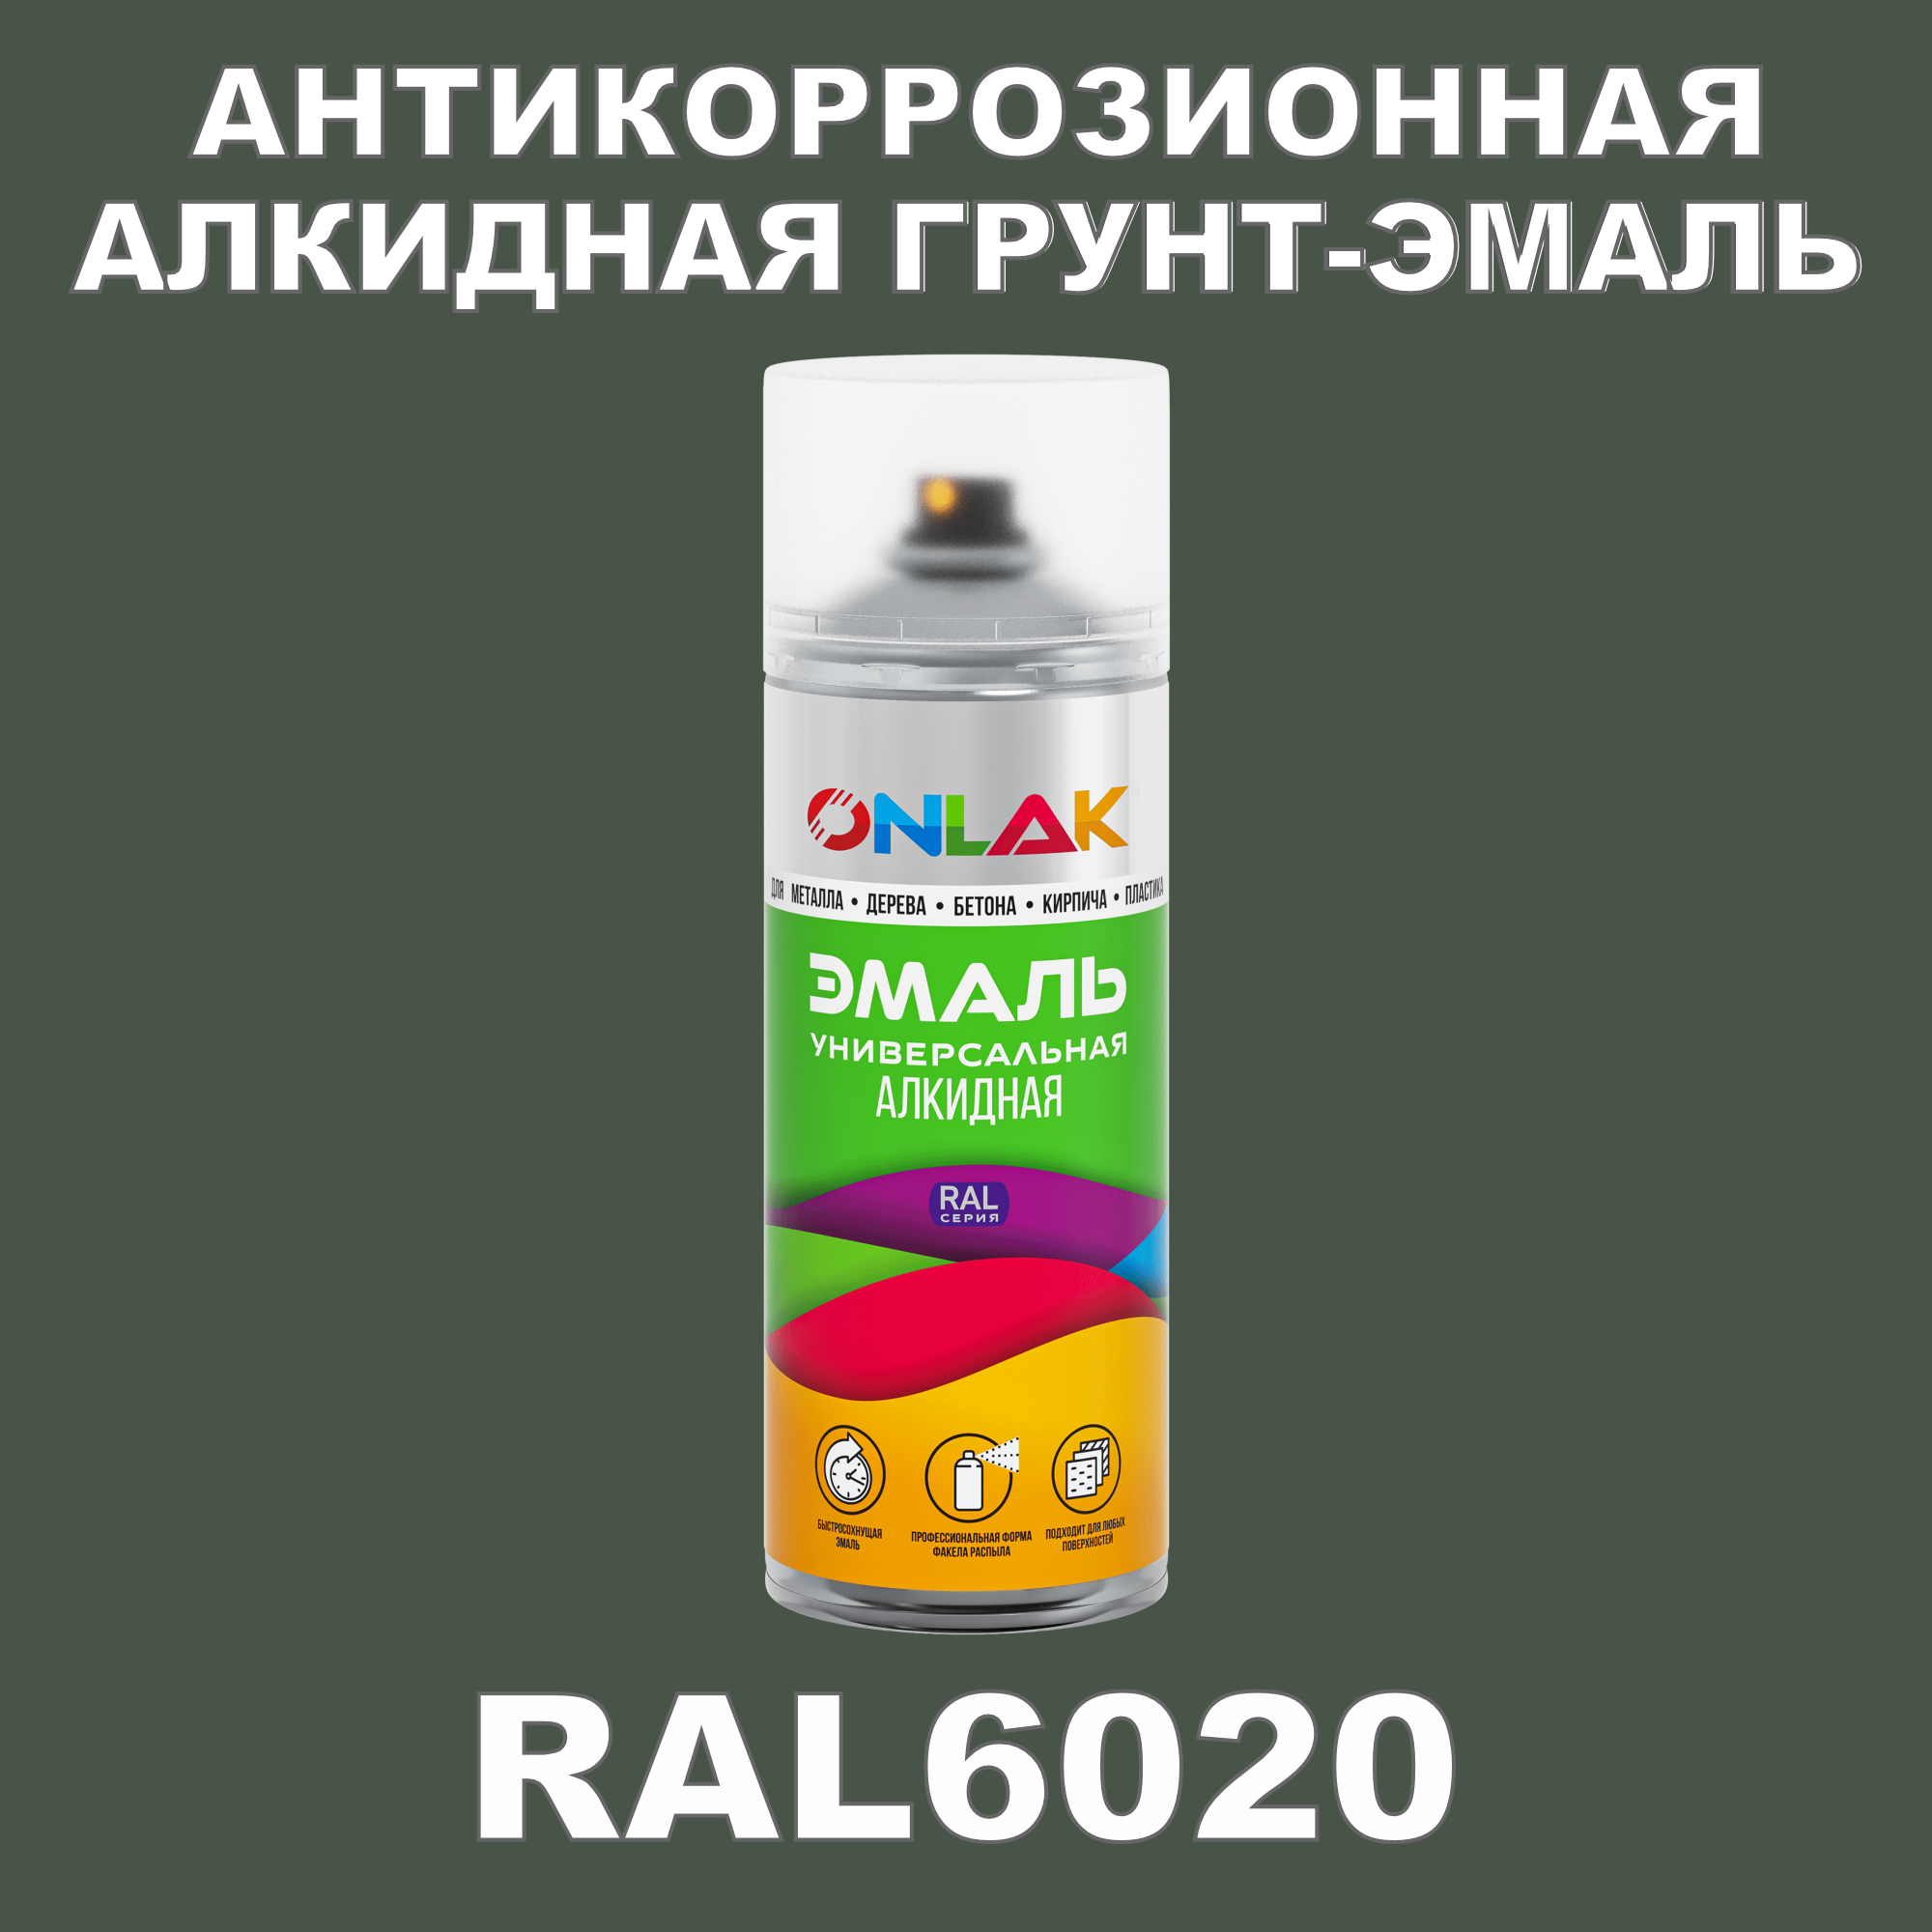 Антикоррозионная грунт-эмаль ONLAK RAL6020 полуматовая для металла и защиты от ржавчины